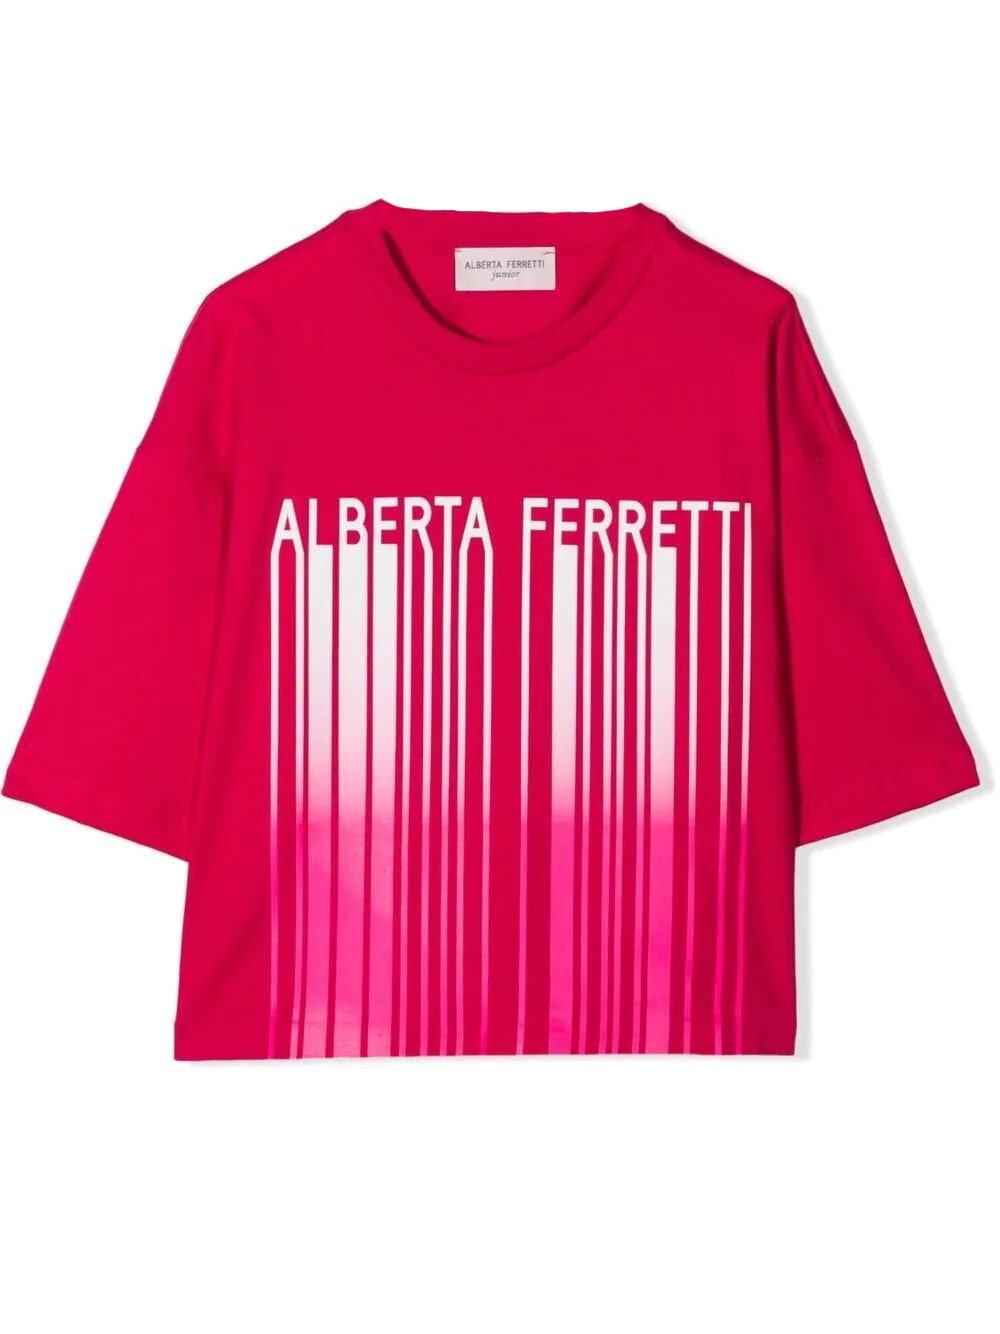 ALBERTA FERRETTI T-SHIRT WITH PRINT,027437T 044